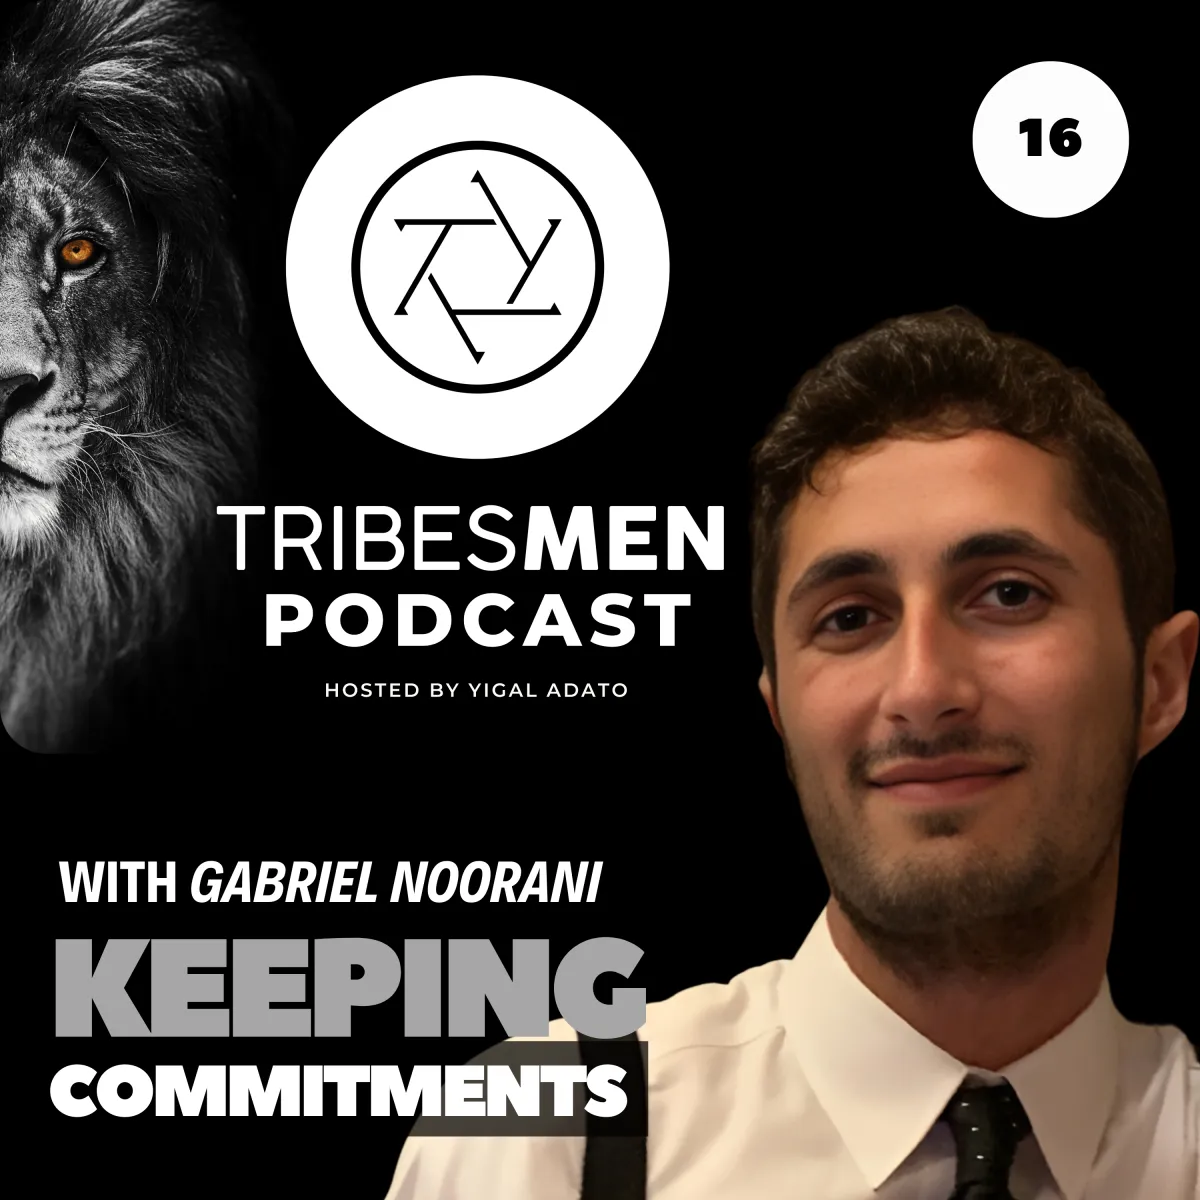 Tribesmen Podcast Episode 16 with Gabriel Noorani